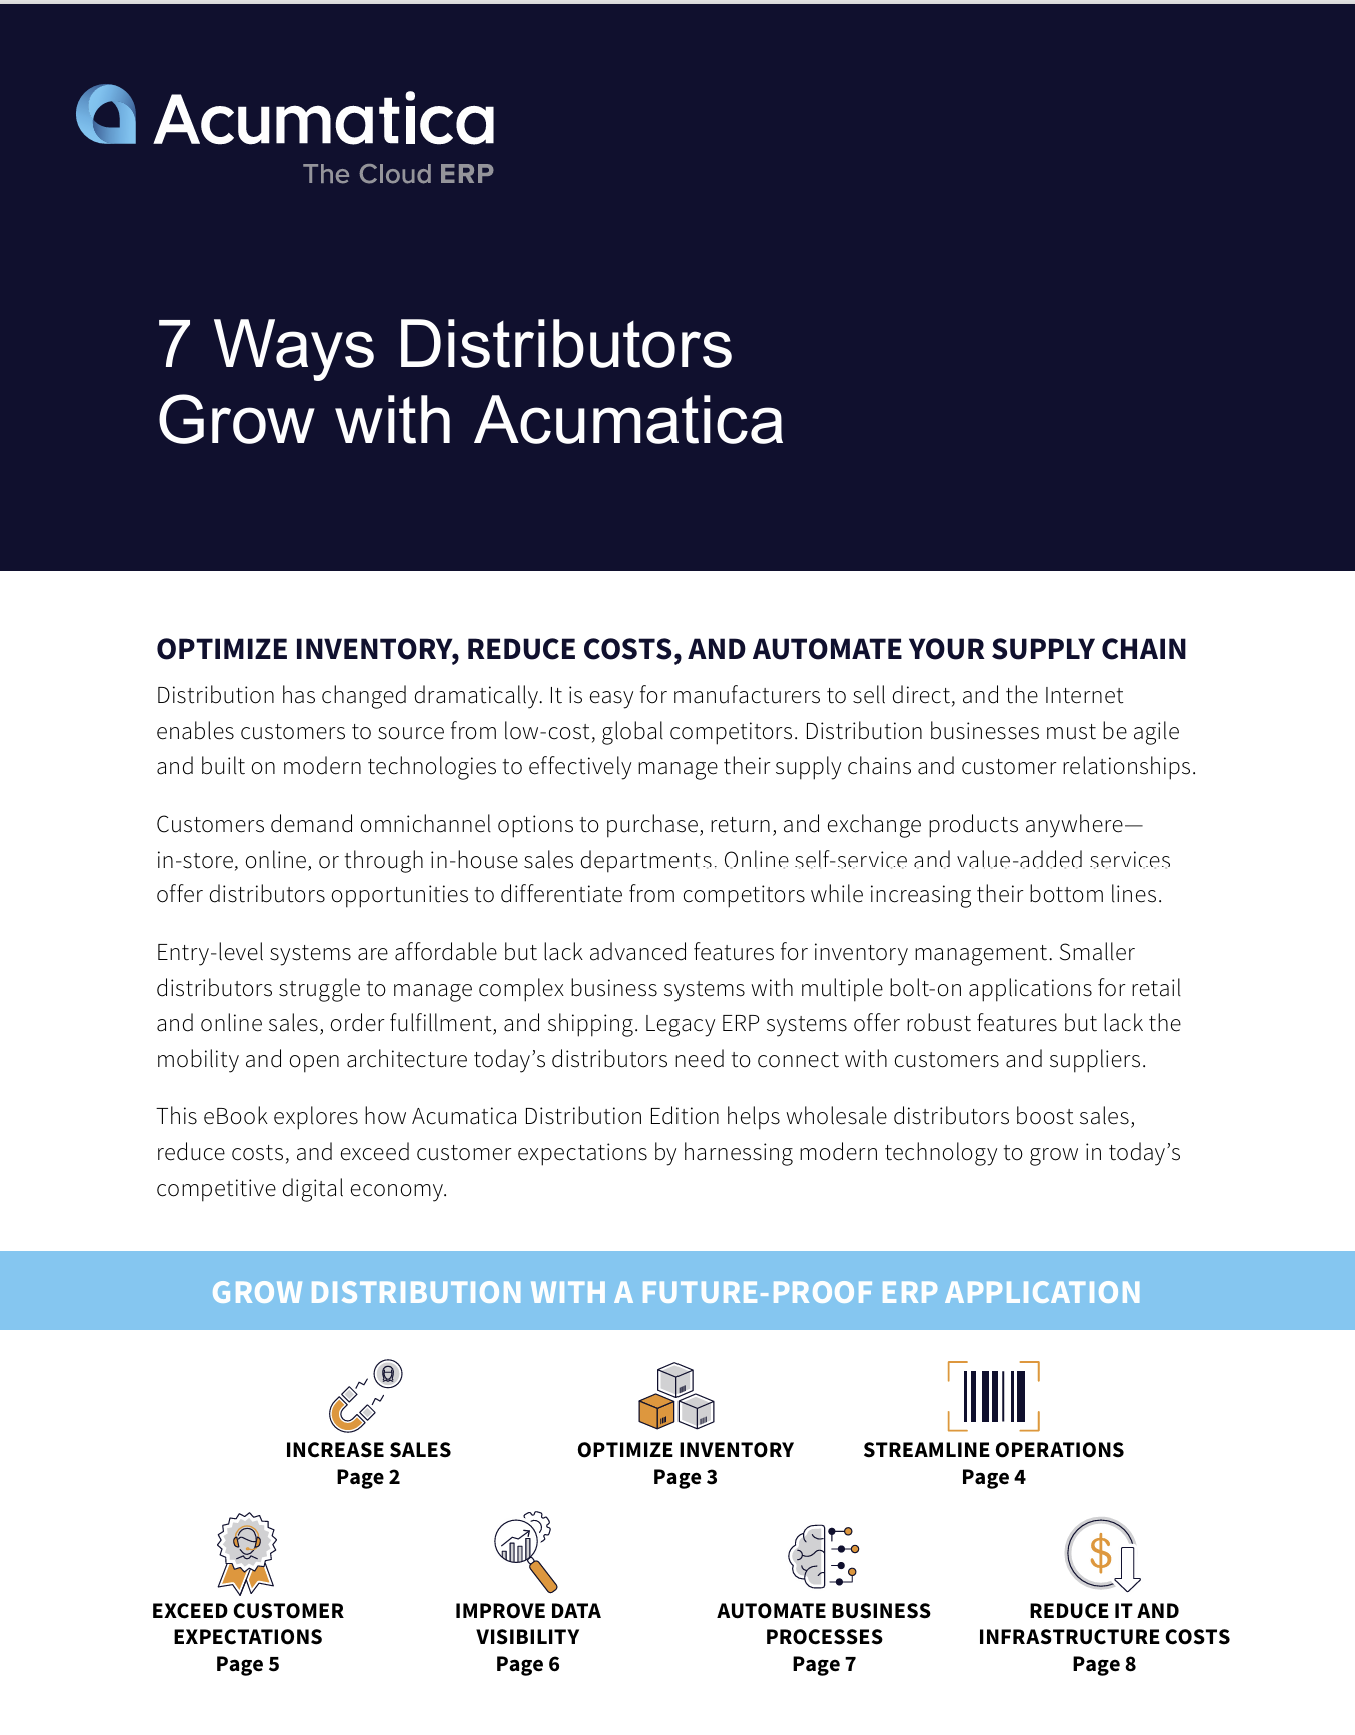 7 Ways Distributors Grow with Acumatica